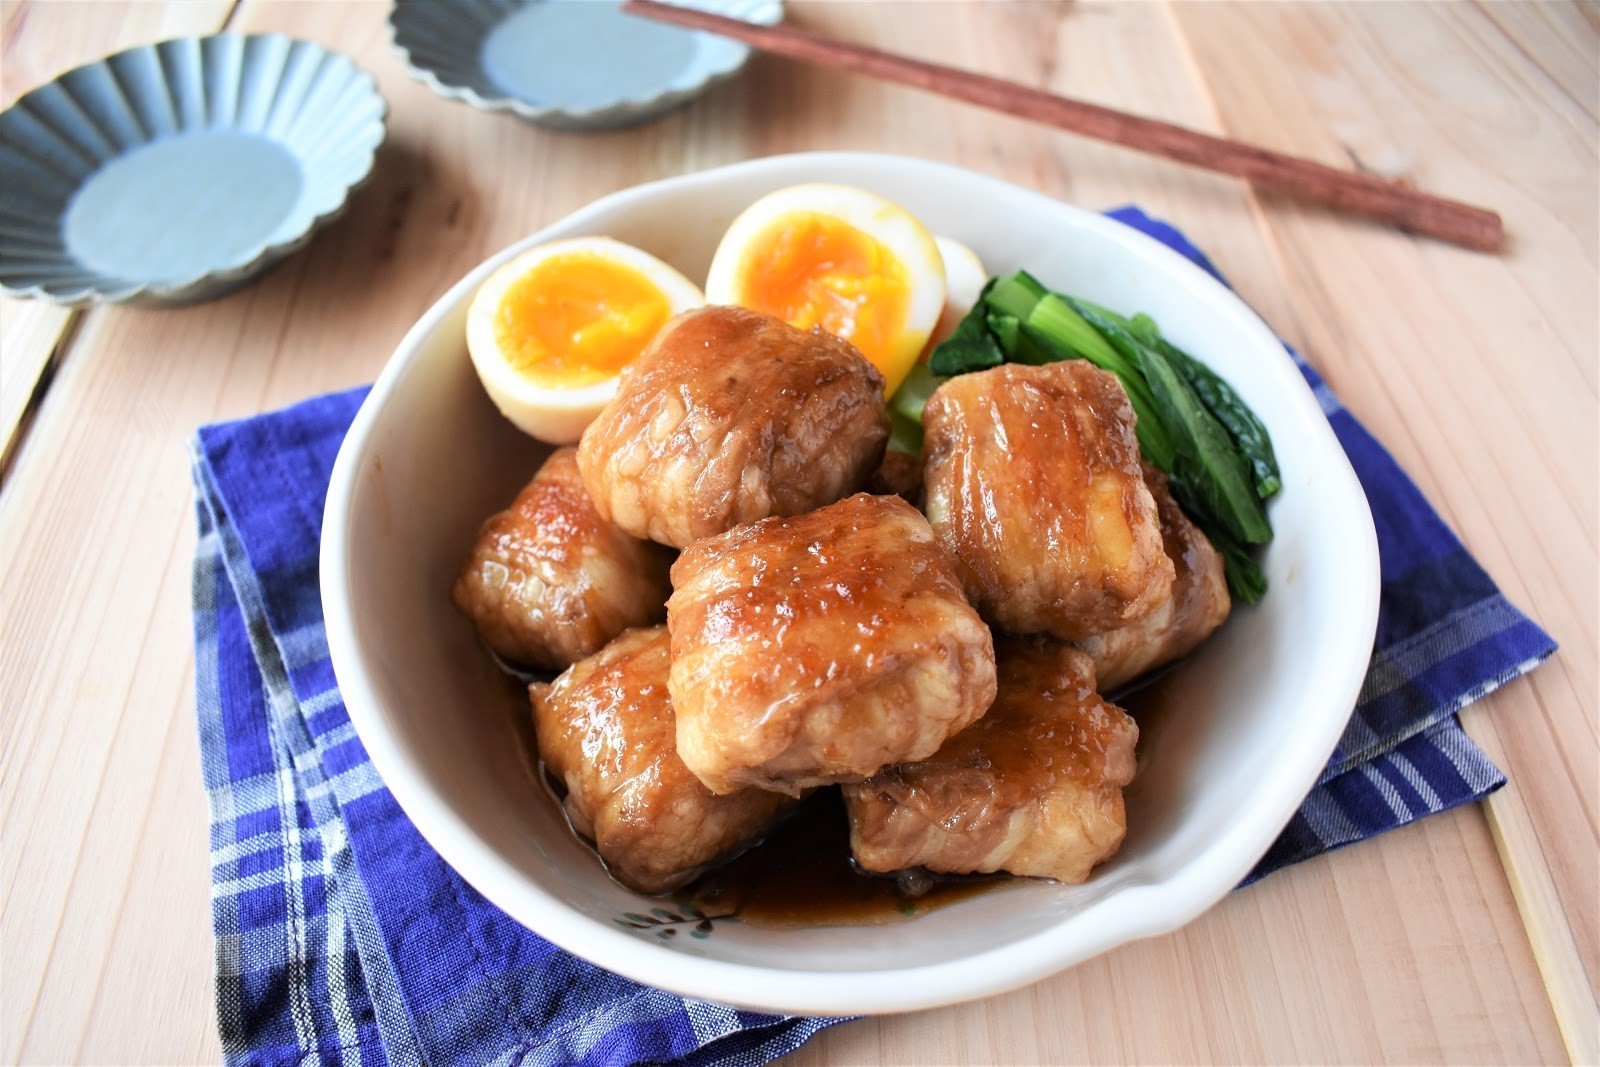 高野豆腐、肉料理のかさ増しに大活躍! 節約大貢献の高野豆腐アレンジレシピ